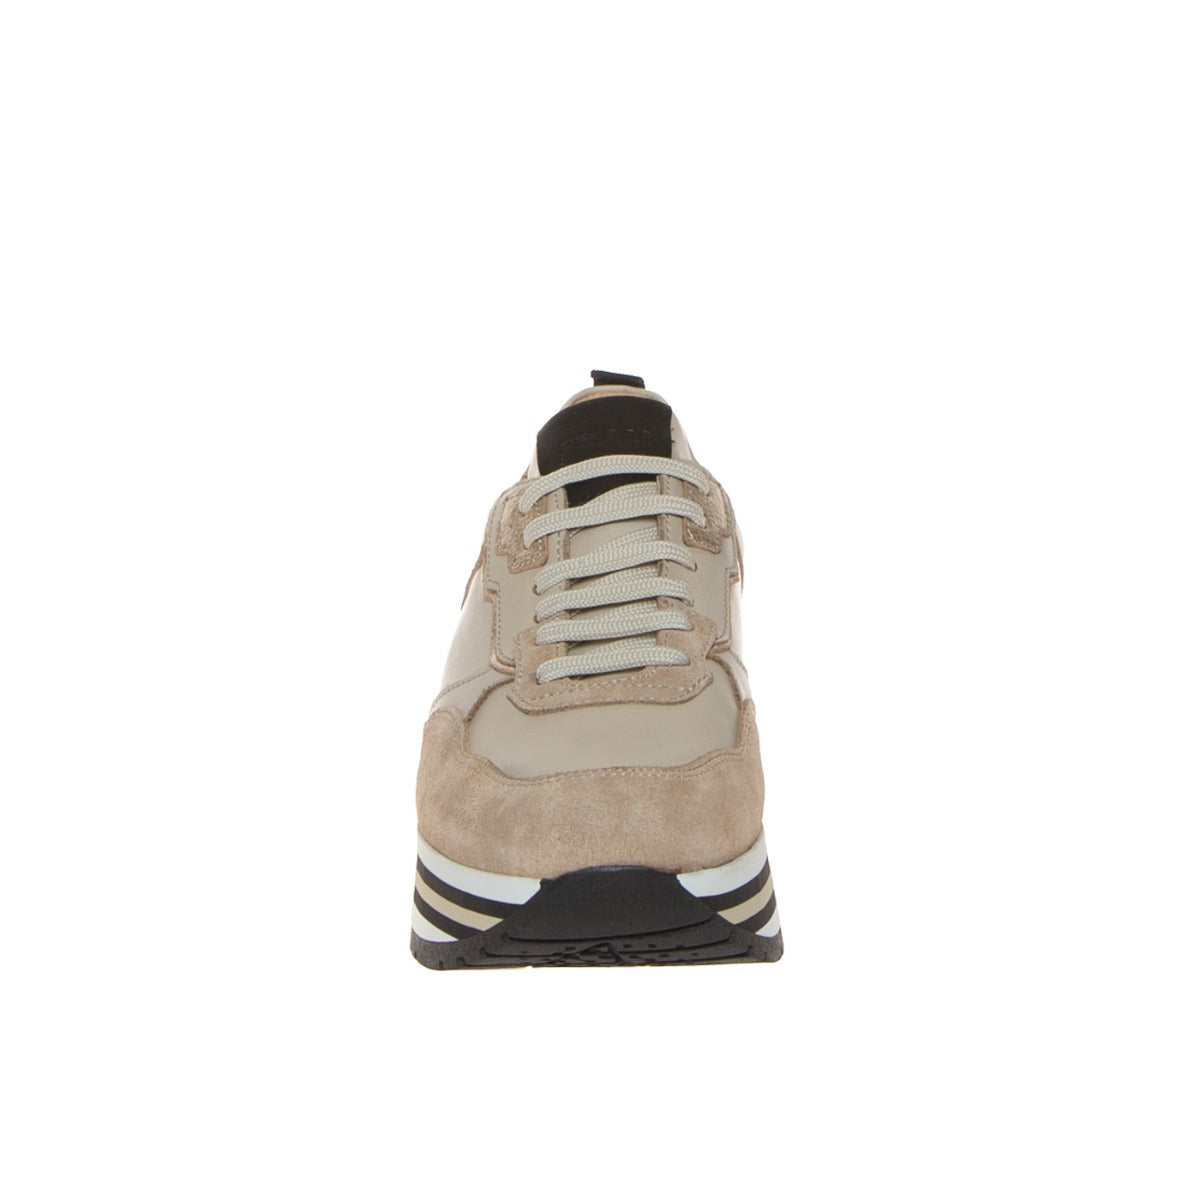 frau-04n1-sneakers-donna-beige-zeppa